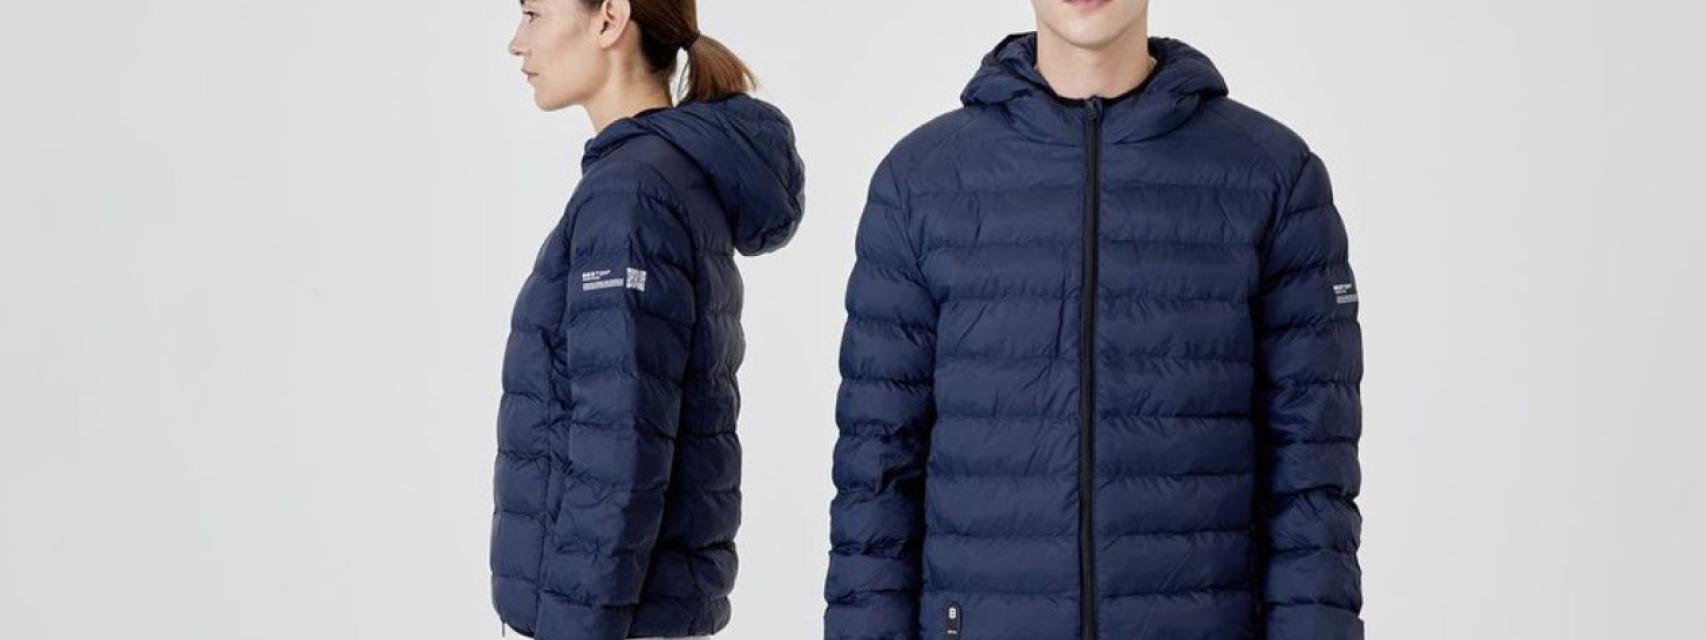 Las chaquetas con calefacción son el nuevo no va más de la tecnología de  consumo